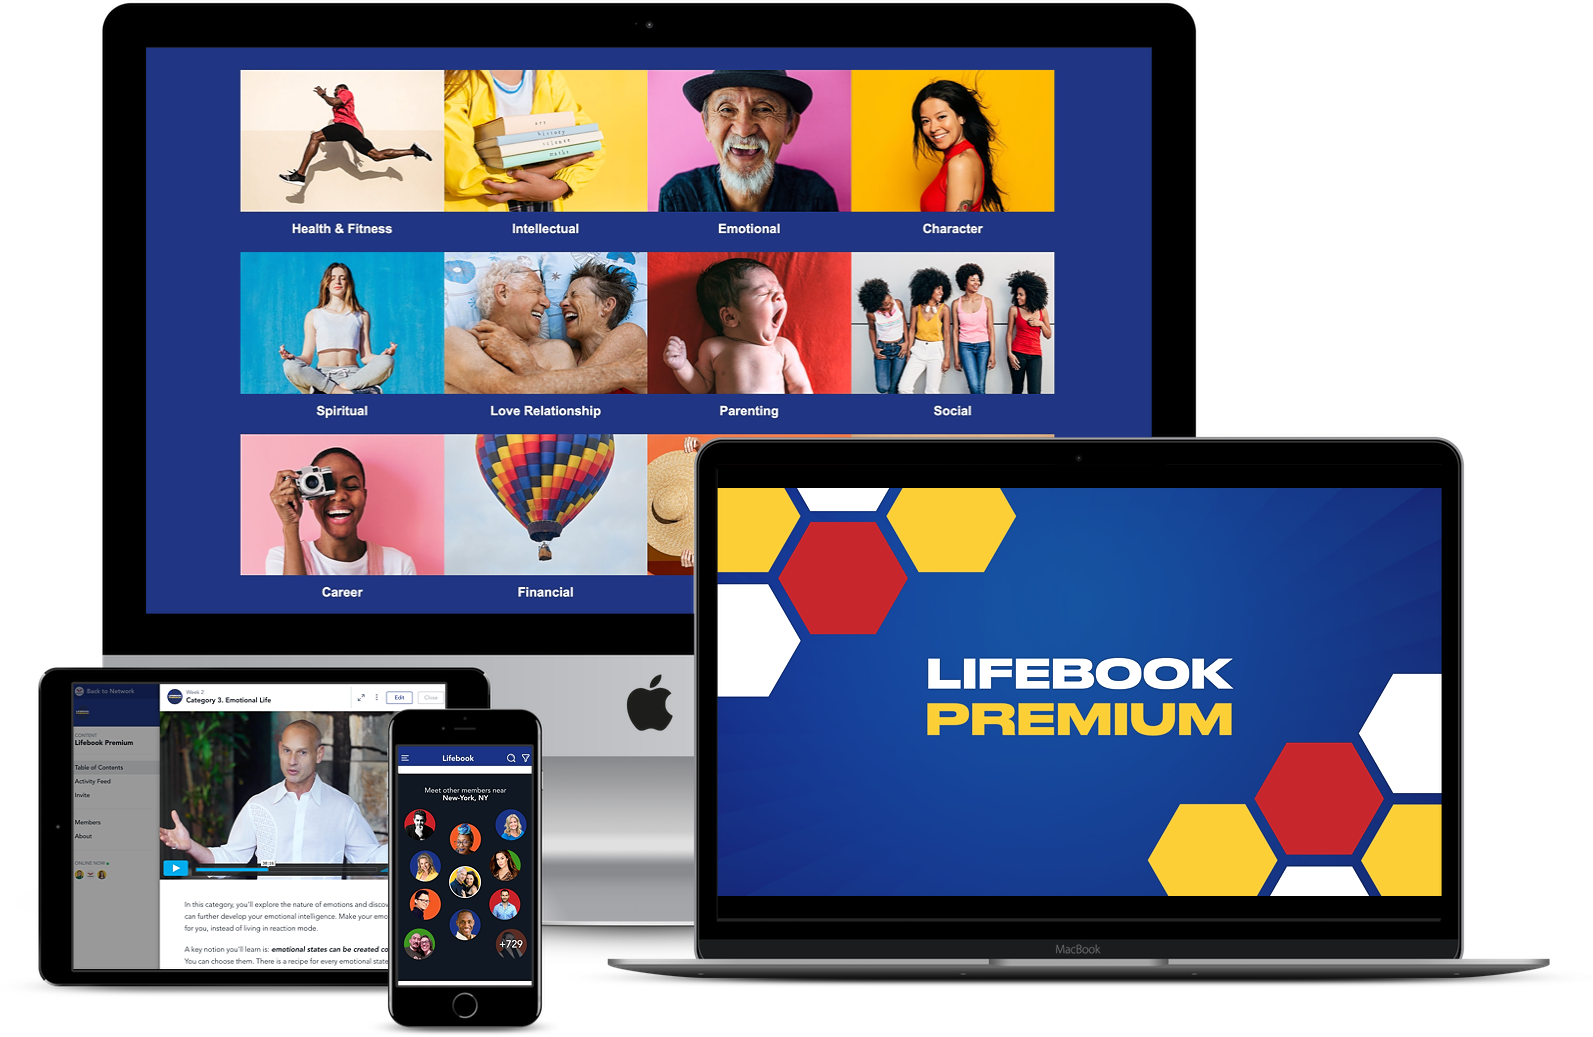 Lifebook-premium package